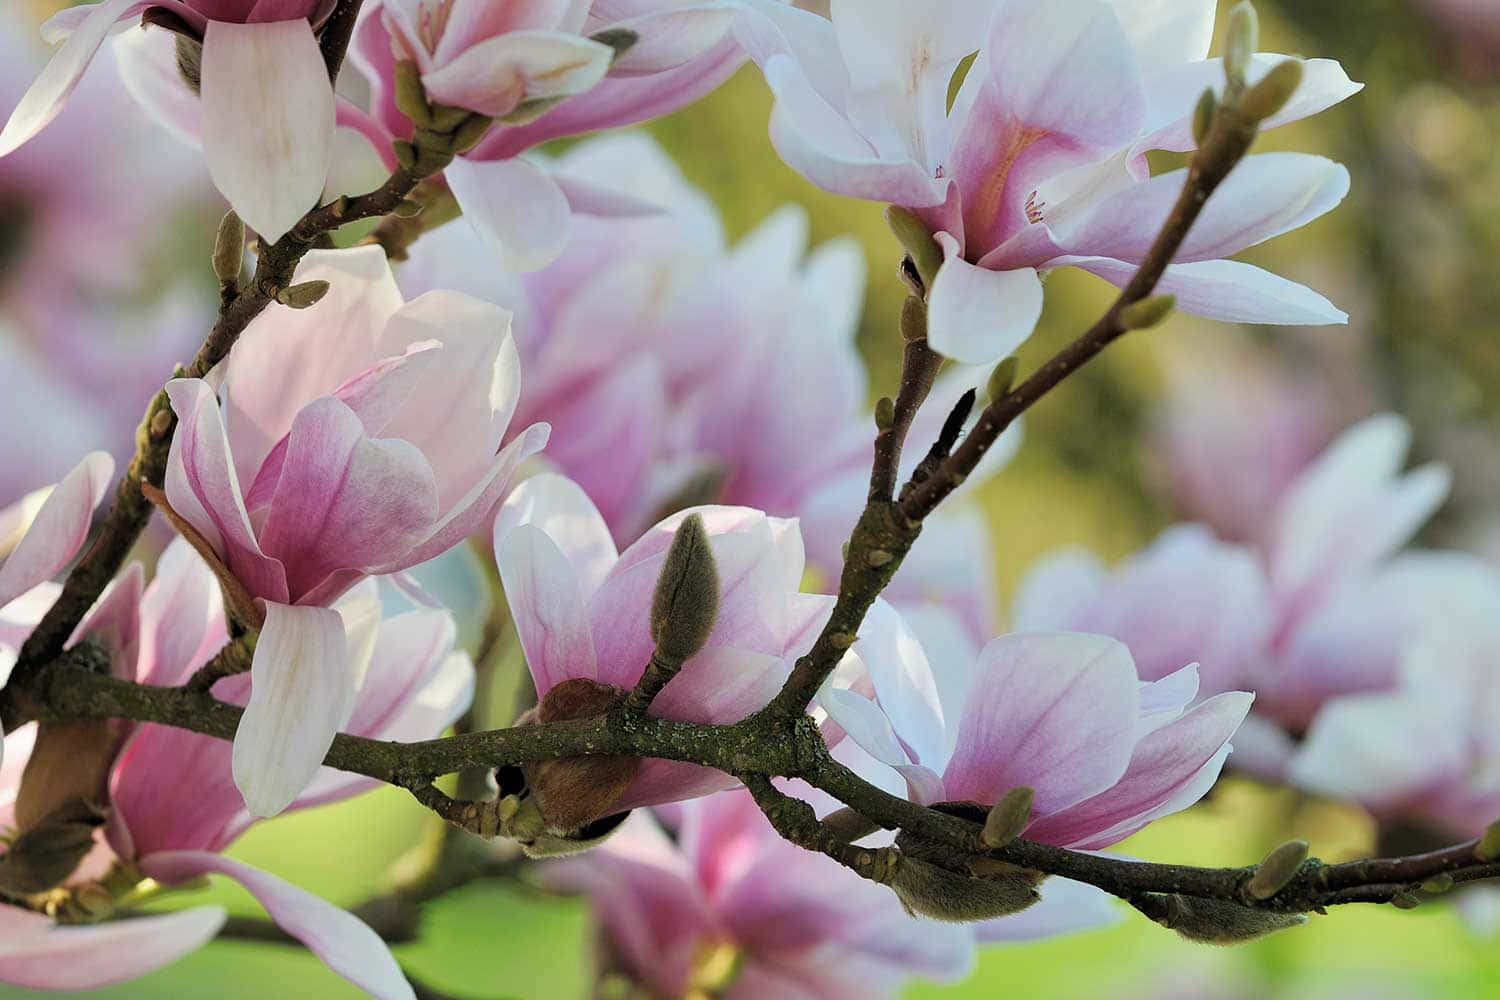 Untripudio Per Gli Occhi: Delicate Fioriture Di Magnolia.